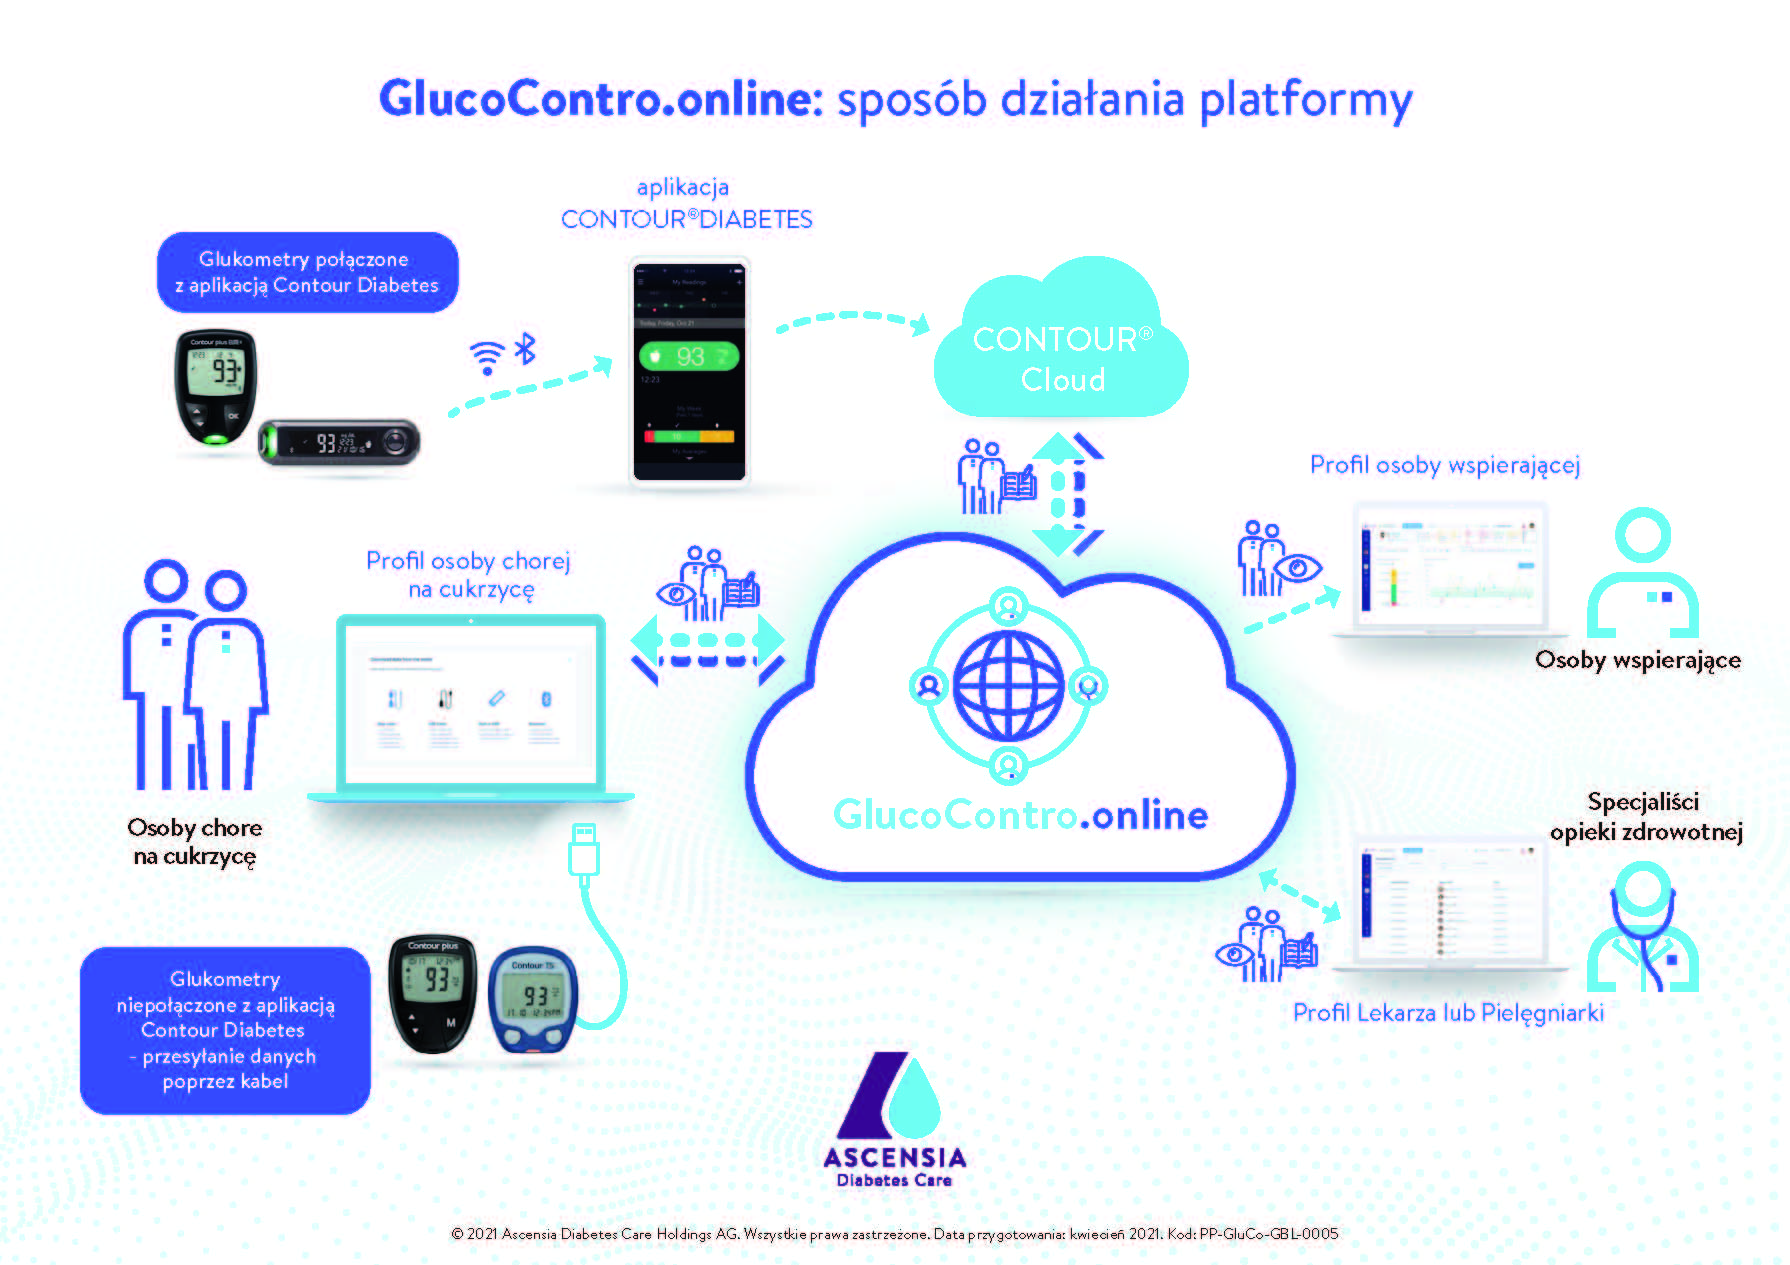 Firma Ascensia wprowadza w Polsce platformę www.glucocontro.online do zdalnej analizy wyników dla specjalistów opieki zdrowotnej i pacjentów chorych na cukrzycę